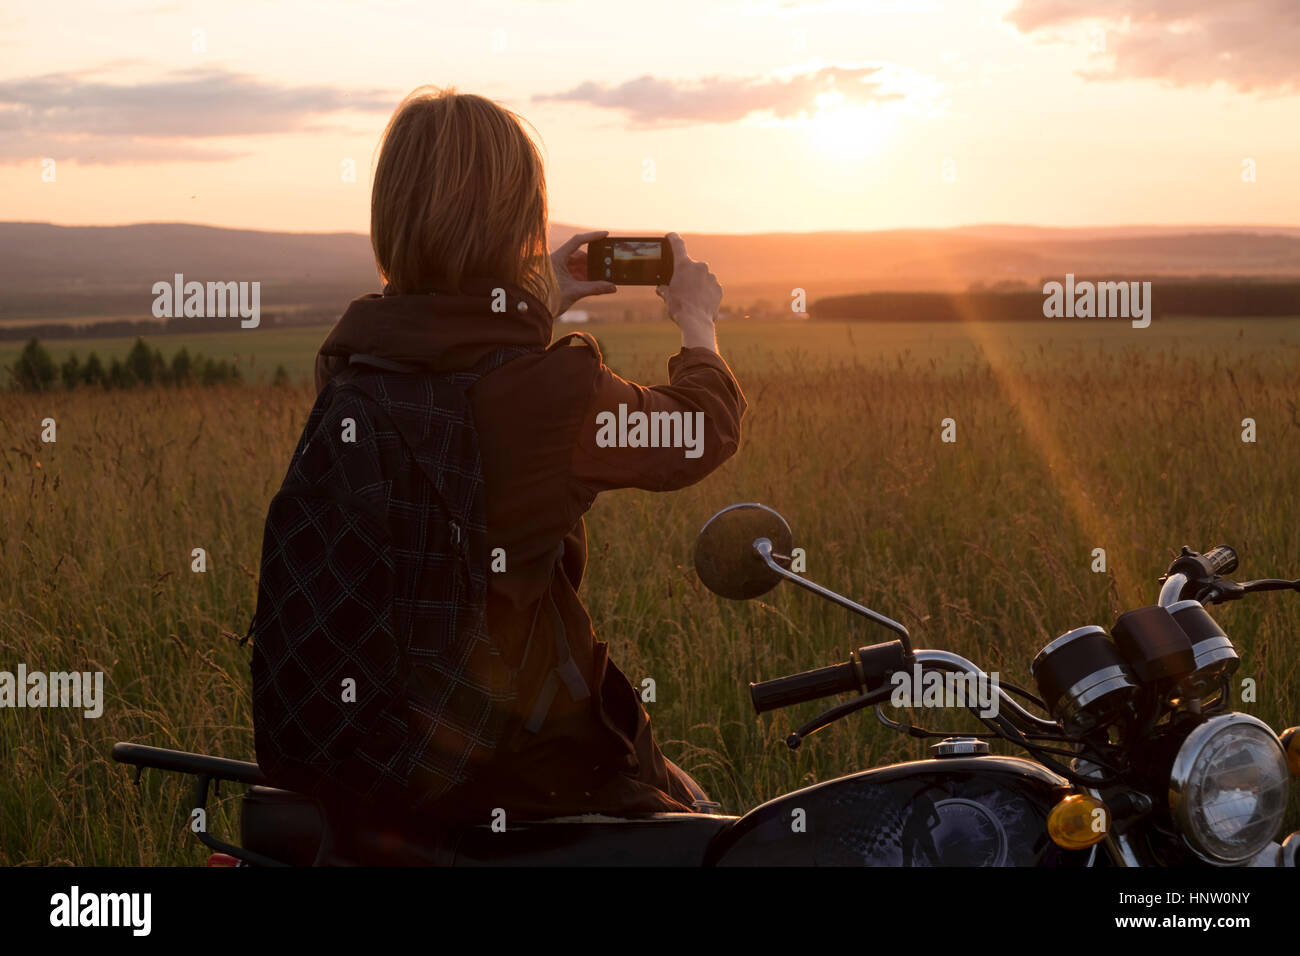 Caucasian woman avec moto dans domaine photographier le coucher du soleil Banque D'Images